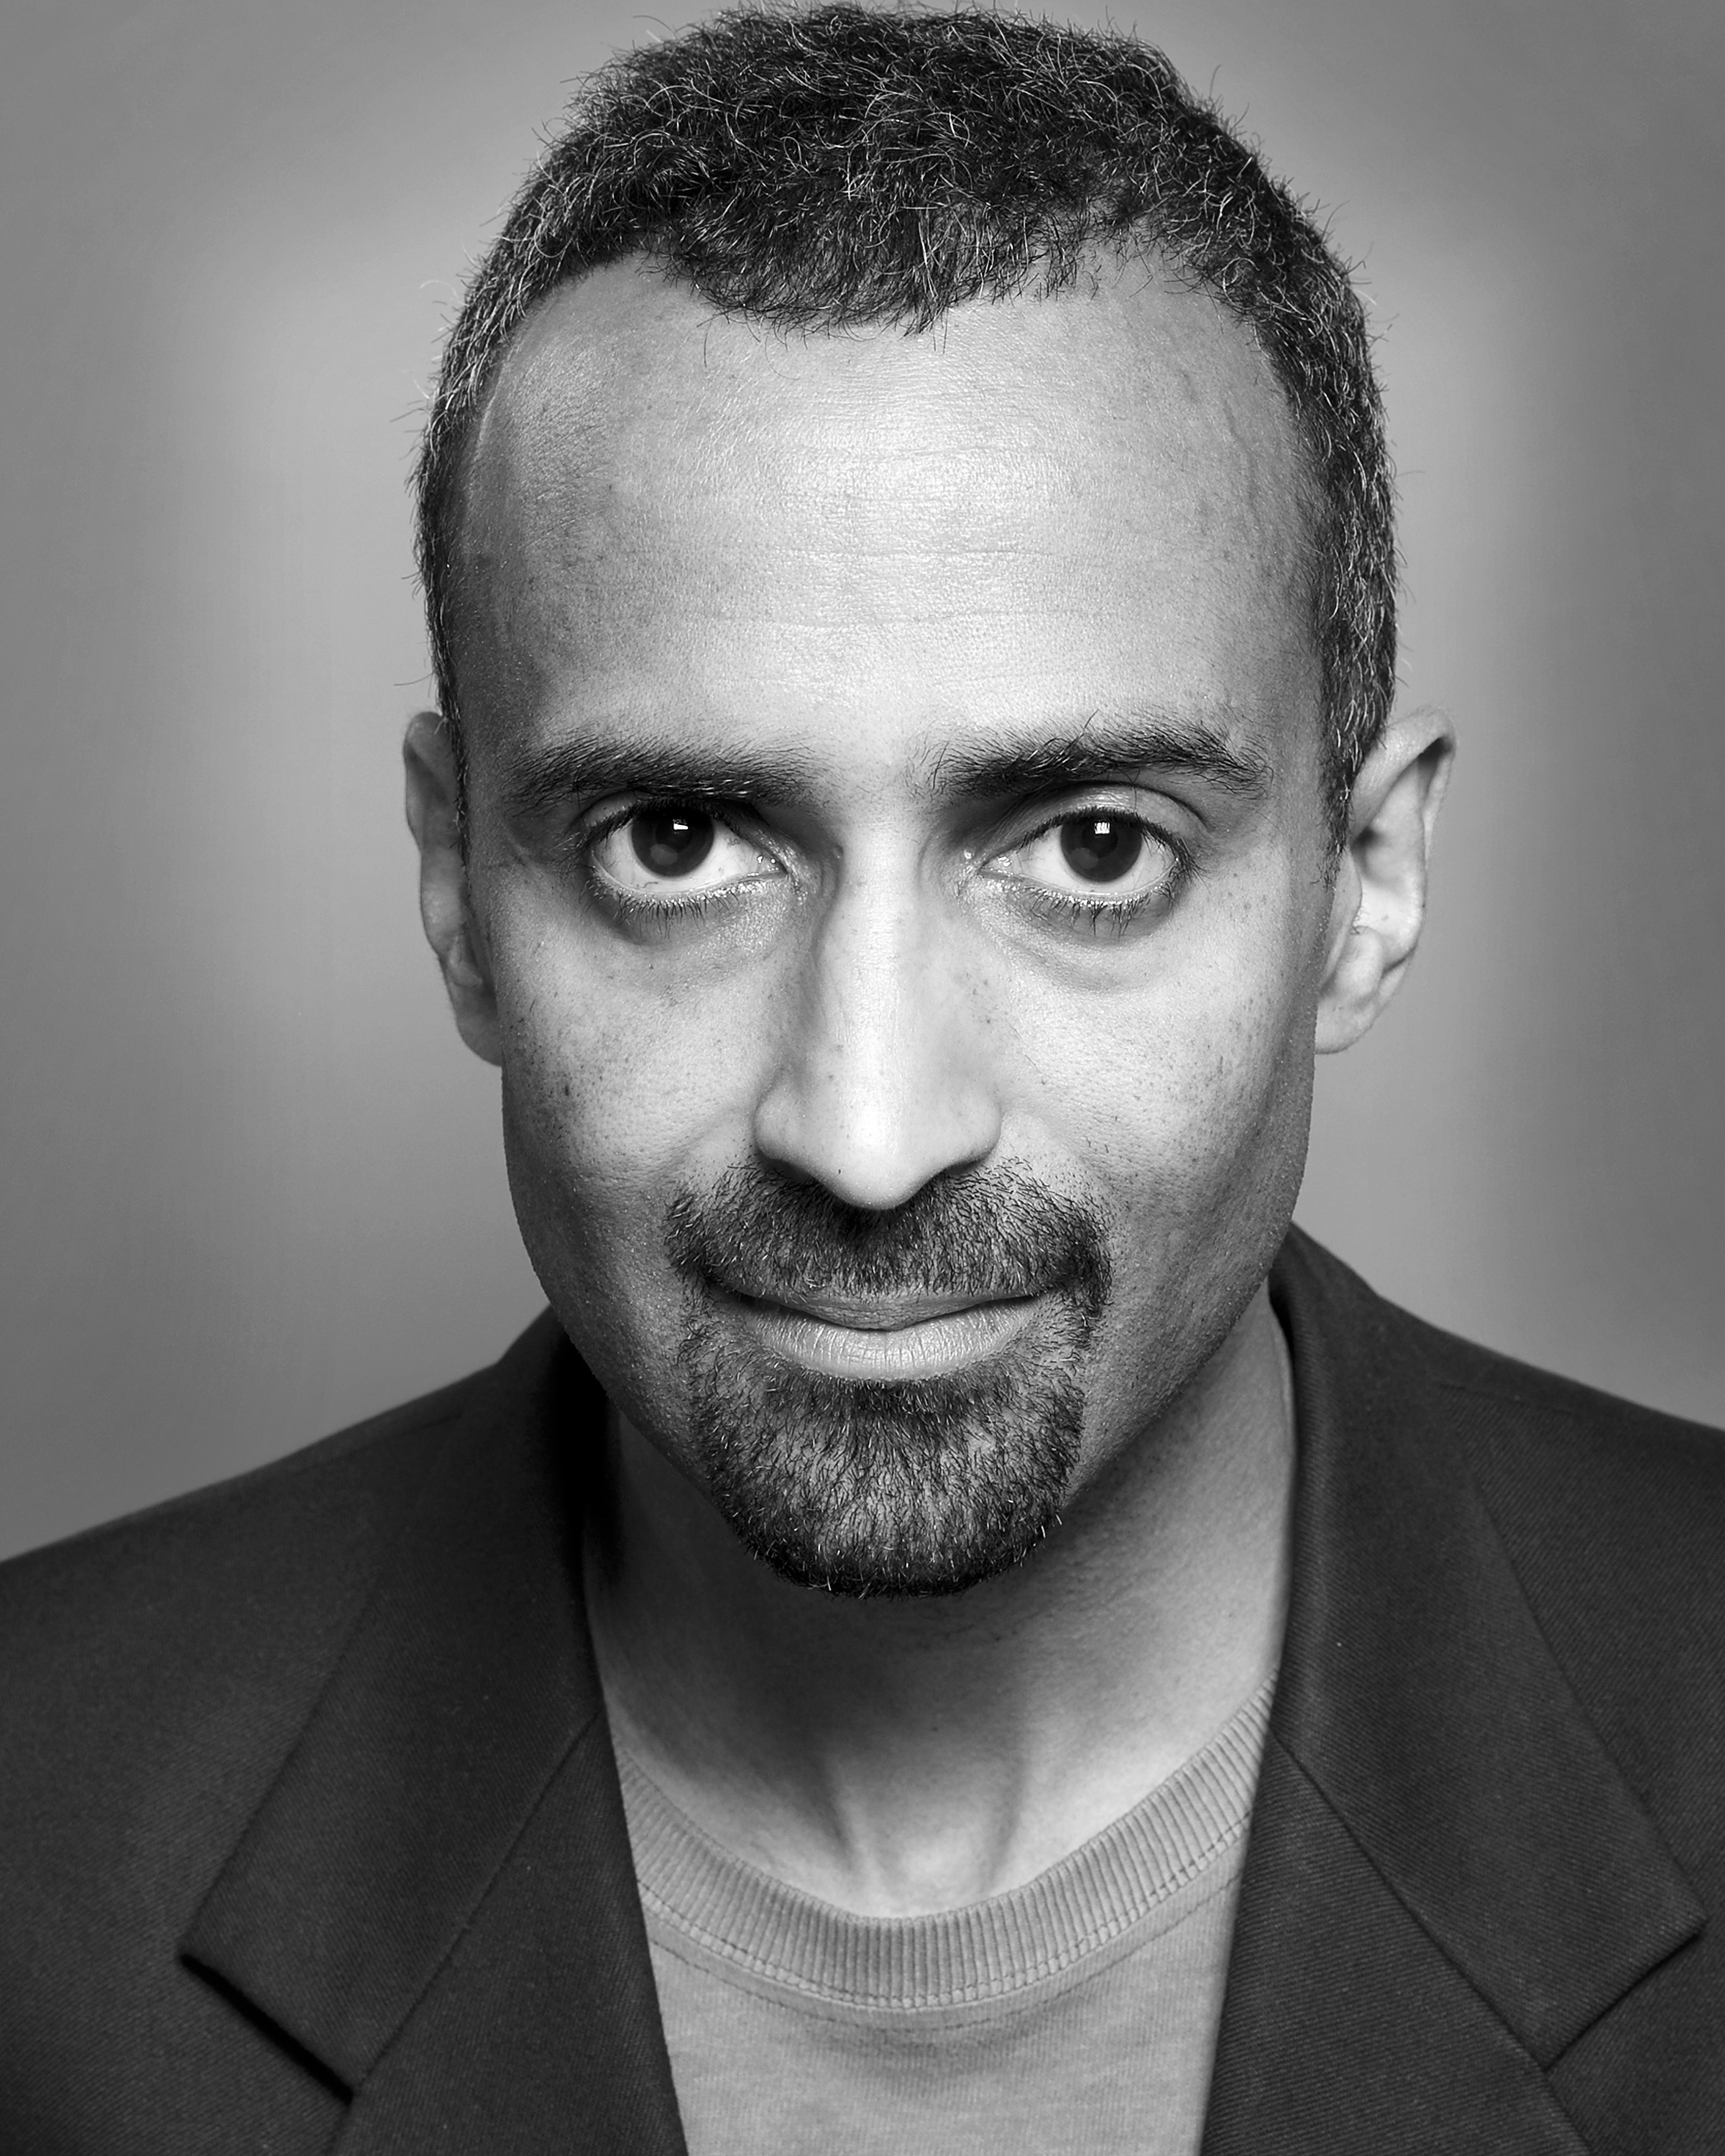 David Al-Fahmi